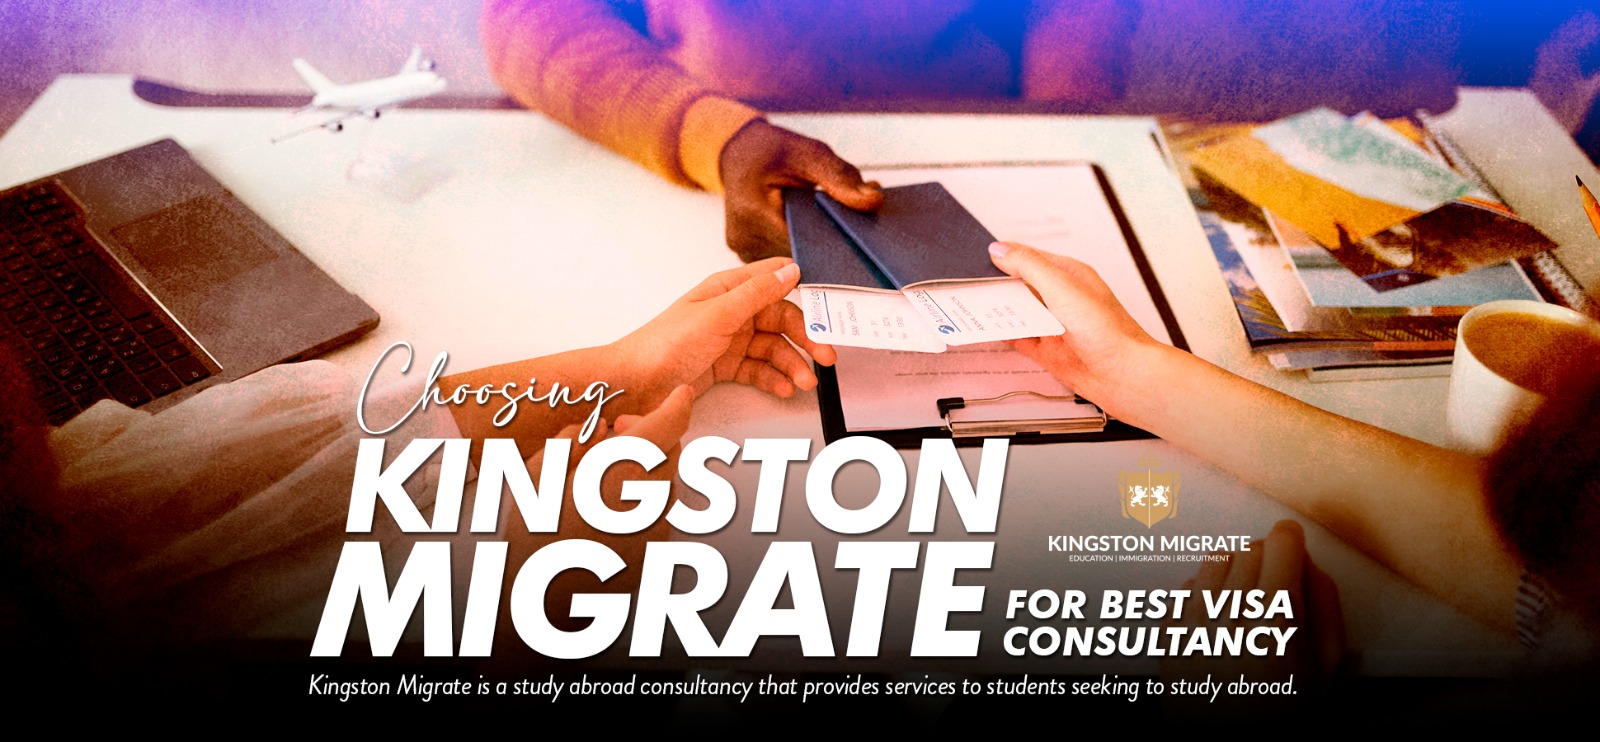 Choosing Kingston Migrate for best visa consultancy